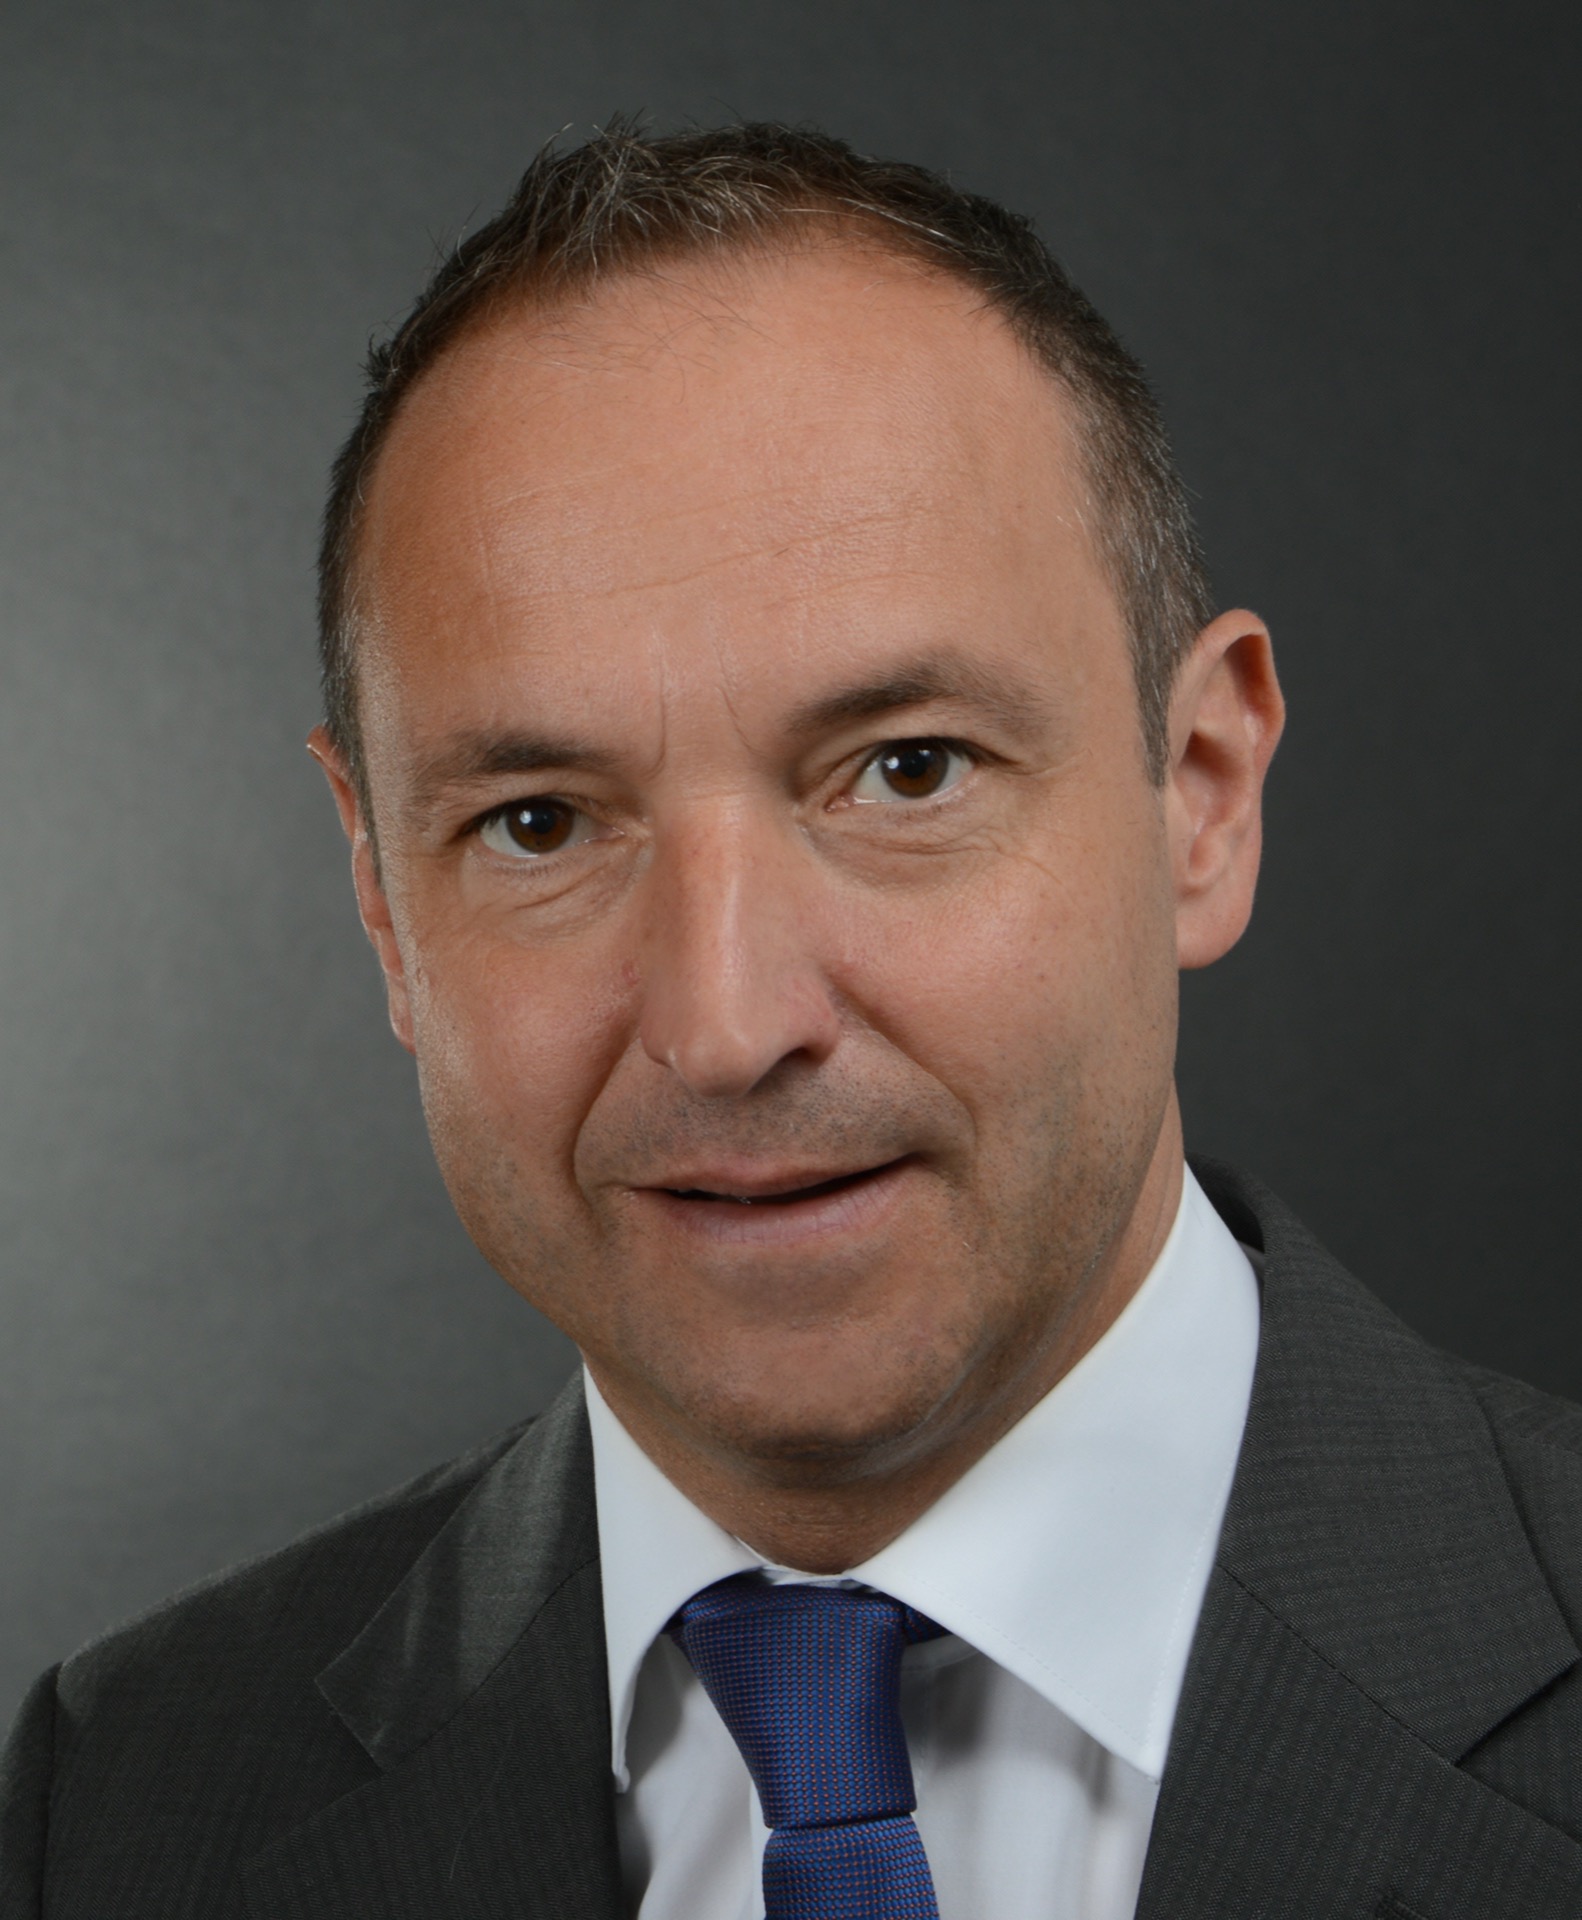 Markus Hänssler ist CEO bei HEWI G. Winker GmbH & Co. KG